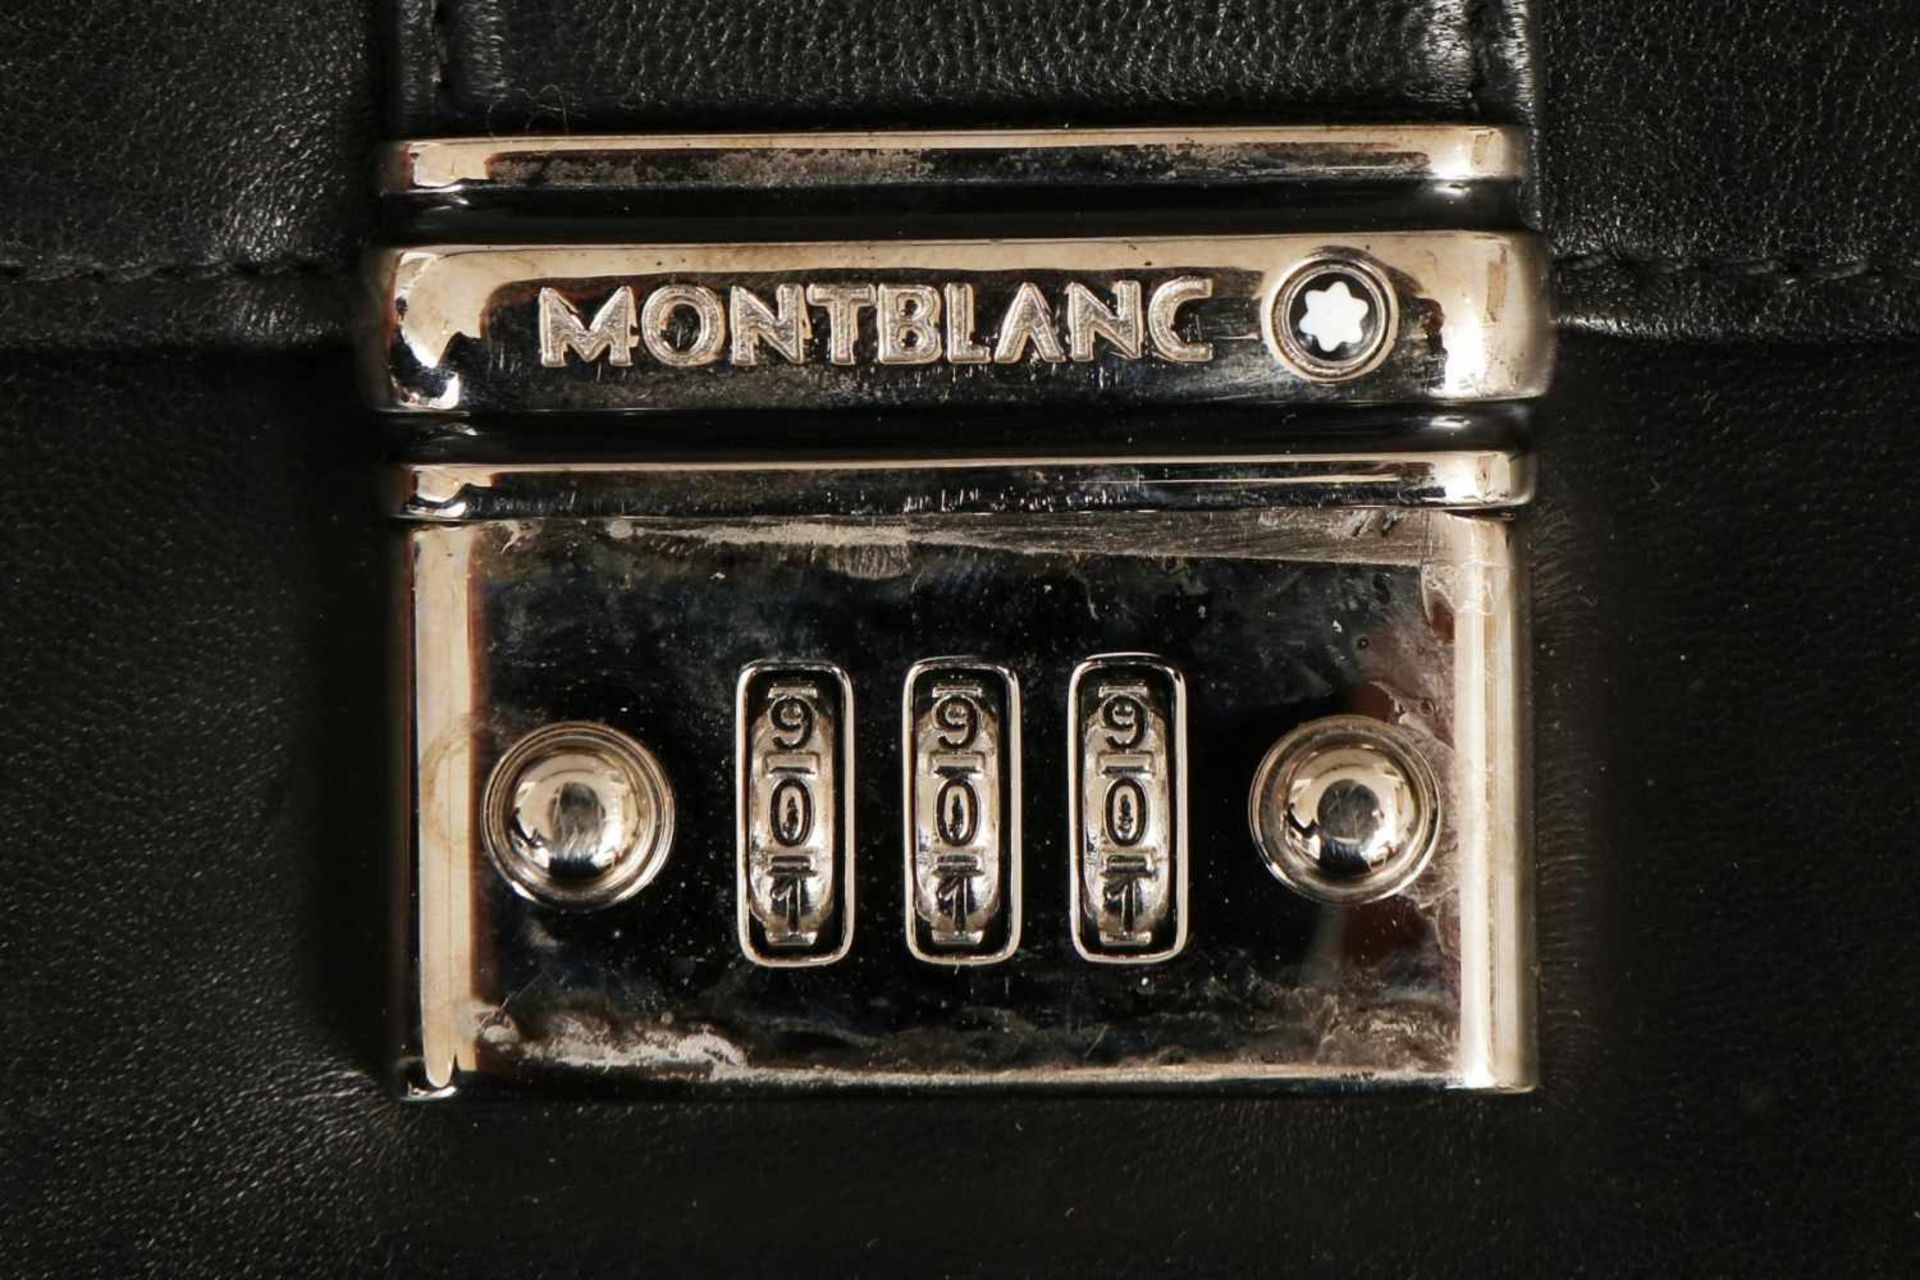 MONTBLANC Aktentascheschwarzes Leder, Kuvertform mit Stahl-Schließe, darauf bezeichnet Montblanc, - Bild 2 aus 2